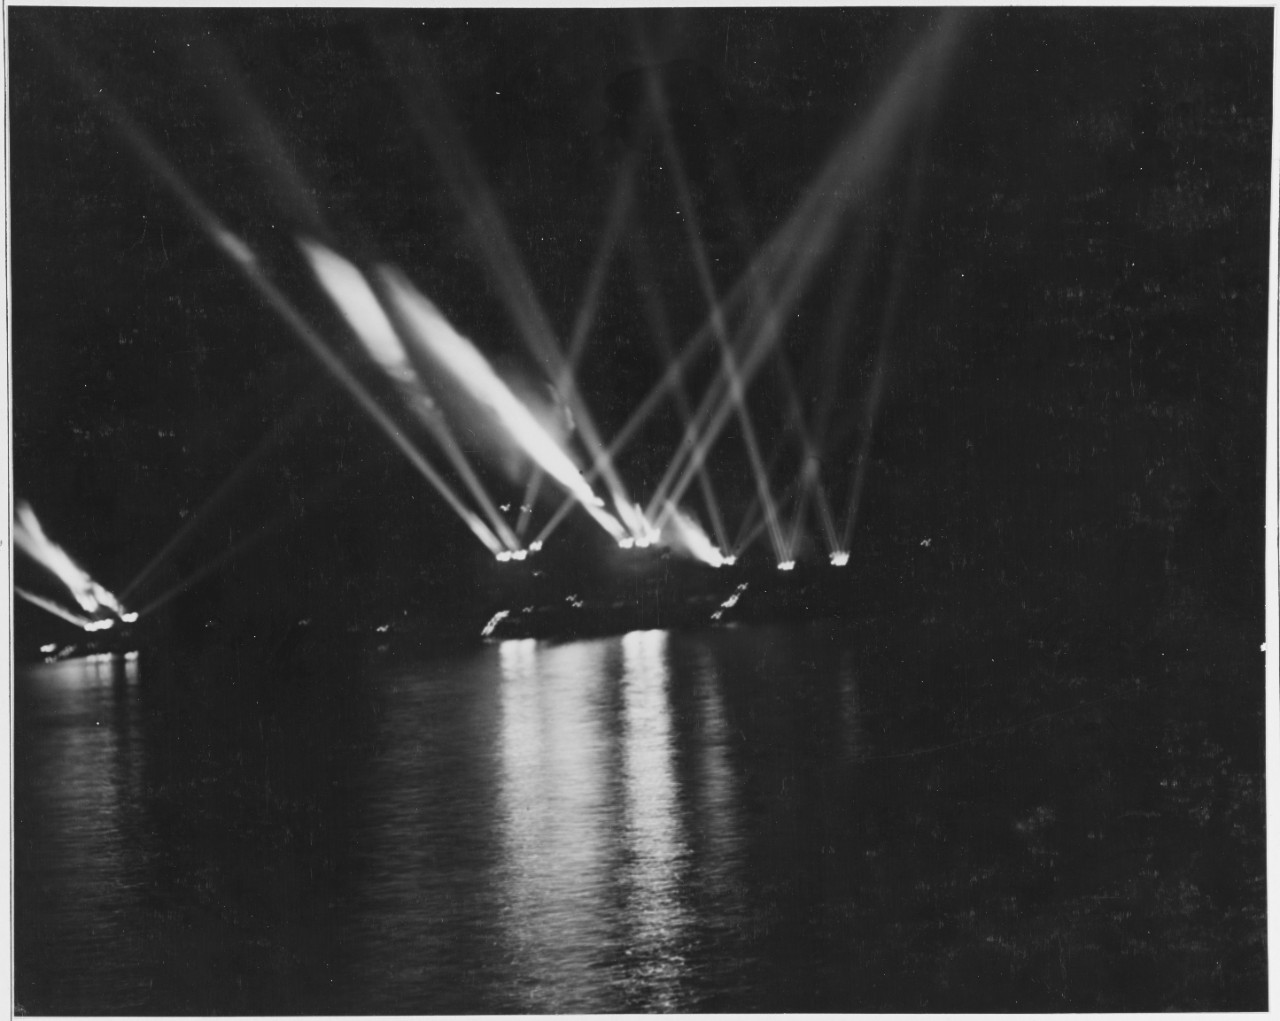 Searchlights probably at Guantanamo Bay, Cuba, 1921